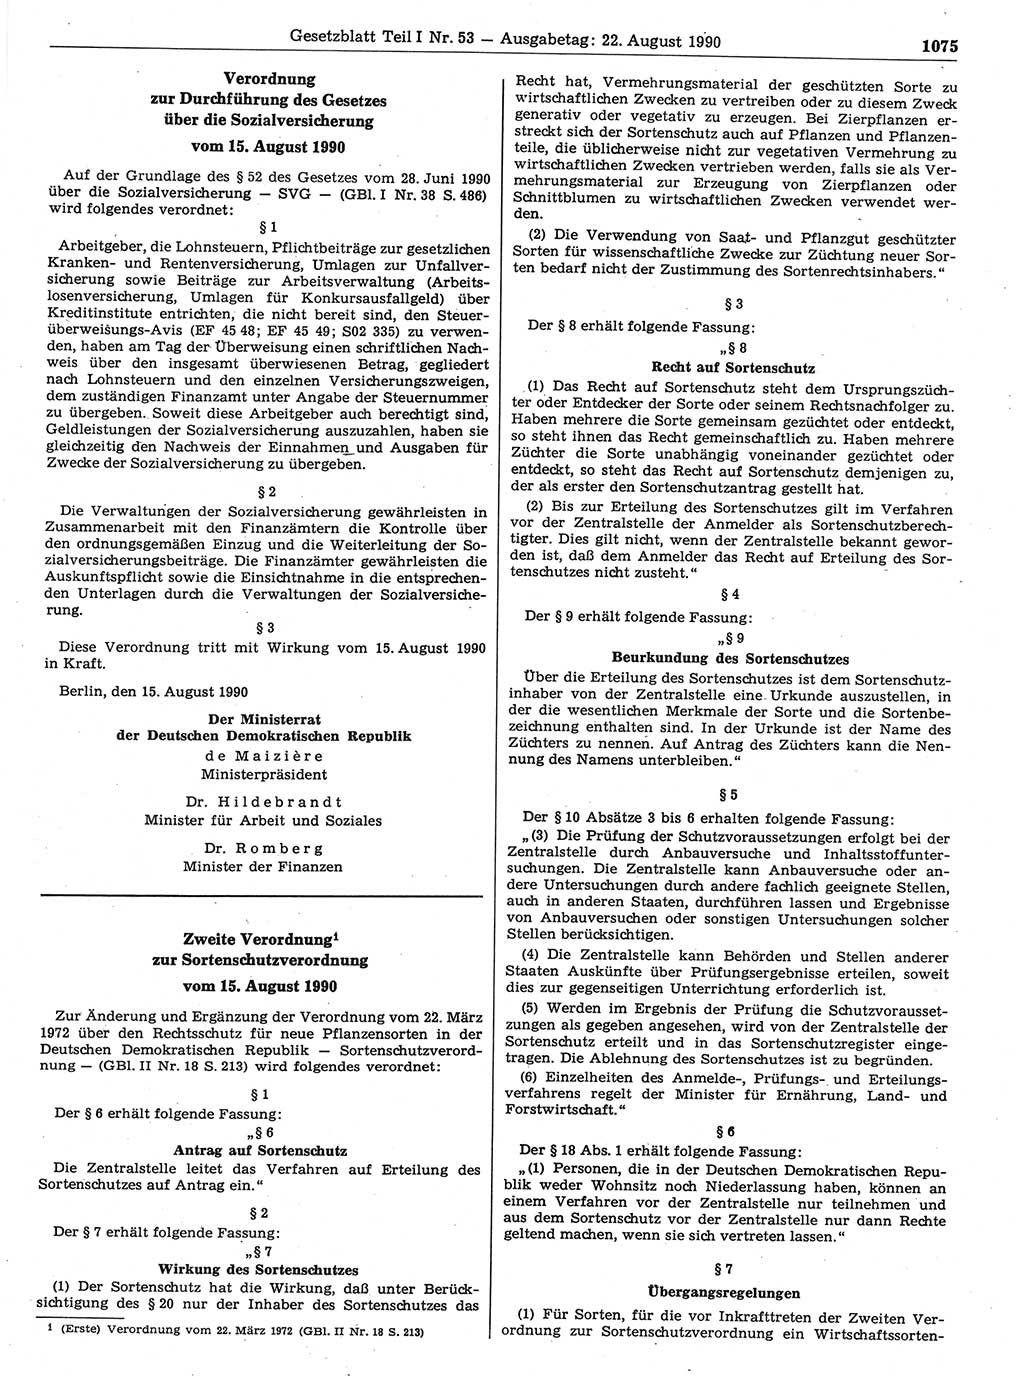 Gesetzblatt (GBl.) der Deutschen Demokratischen Republik (DDR) Teil Ⅰ 1990, Seite 1075 (GBl. DDR Ⅰ 1990, S. 1075)